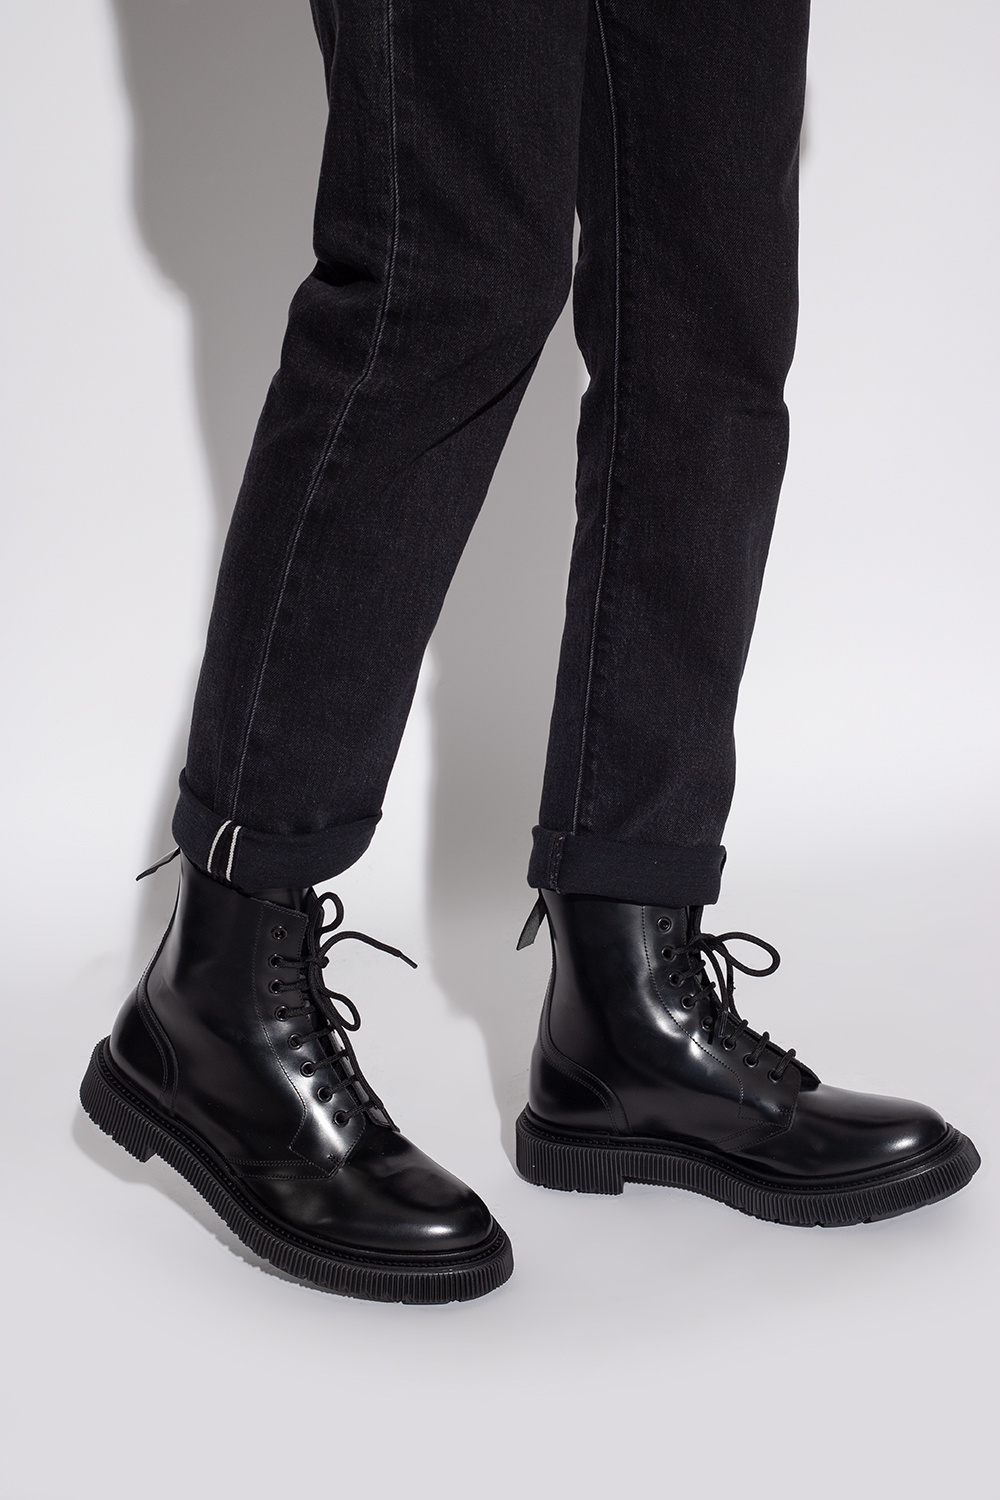 Adieu Paris Leather Boots boots